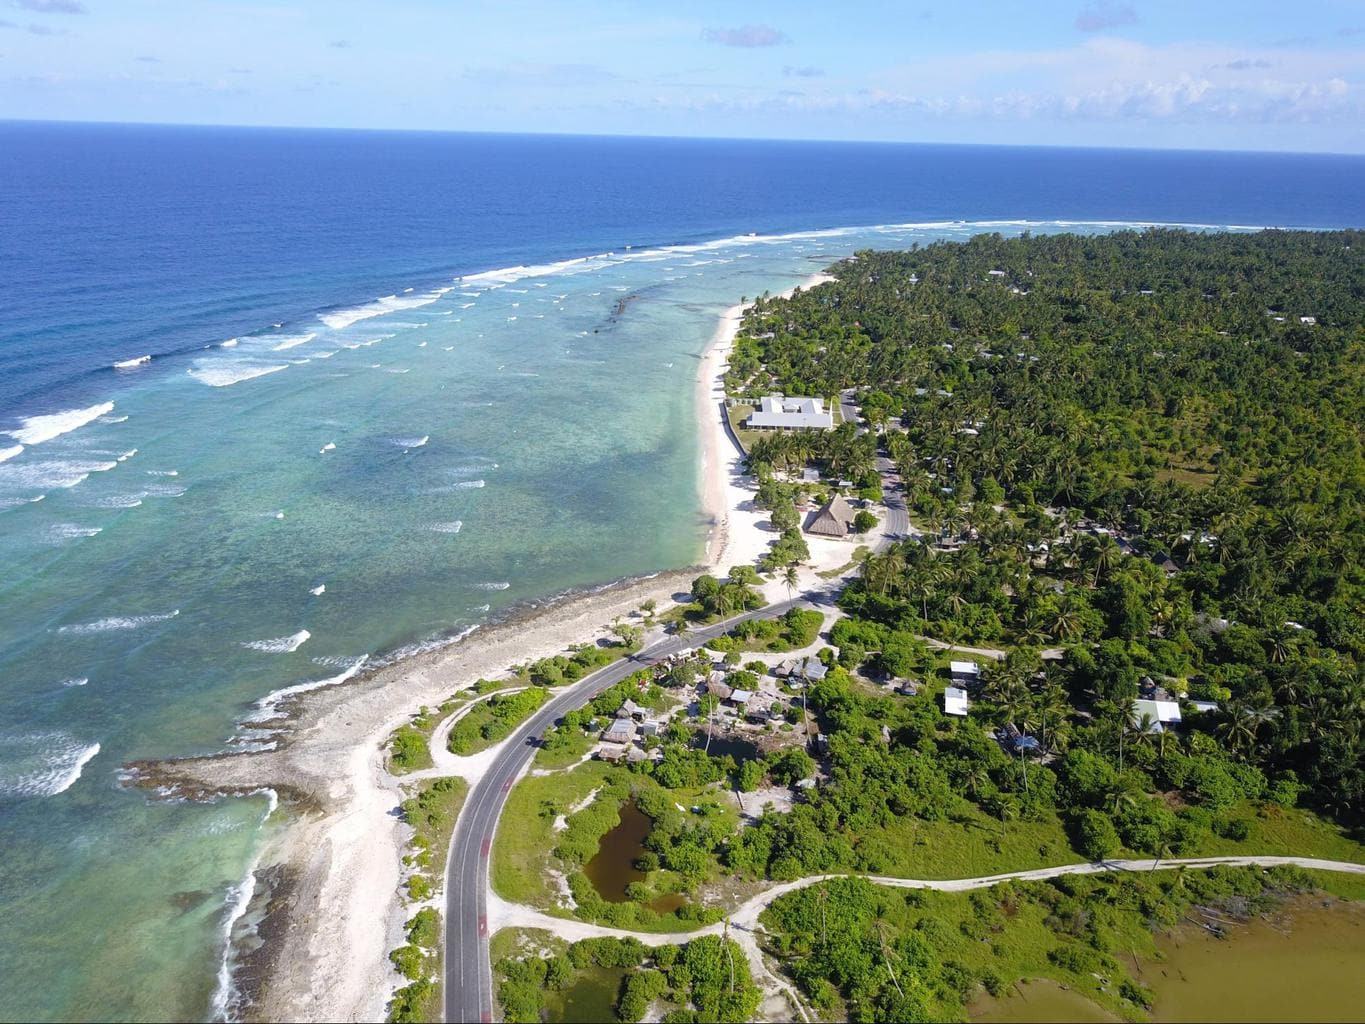 Most of Kiribati lies right at sea level